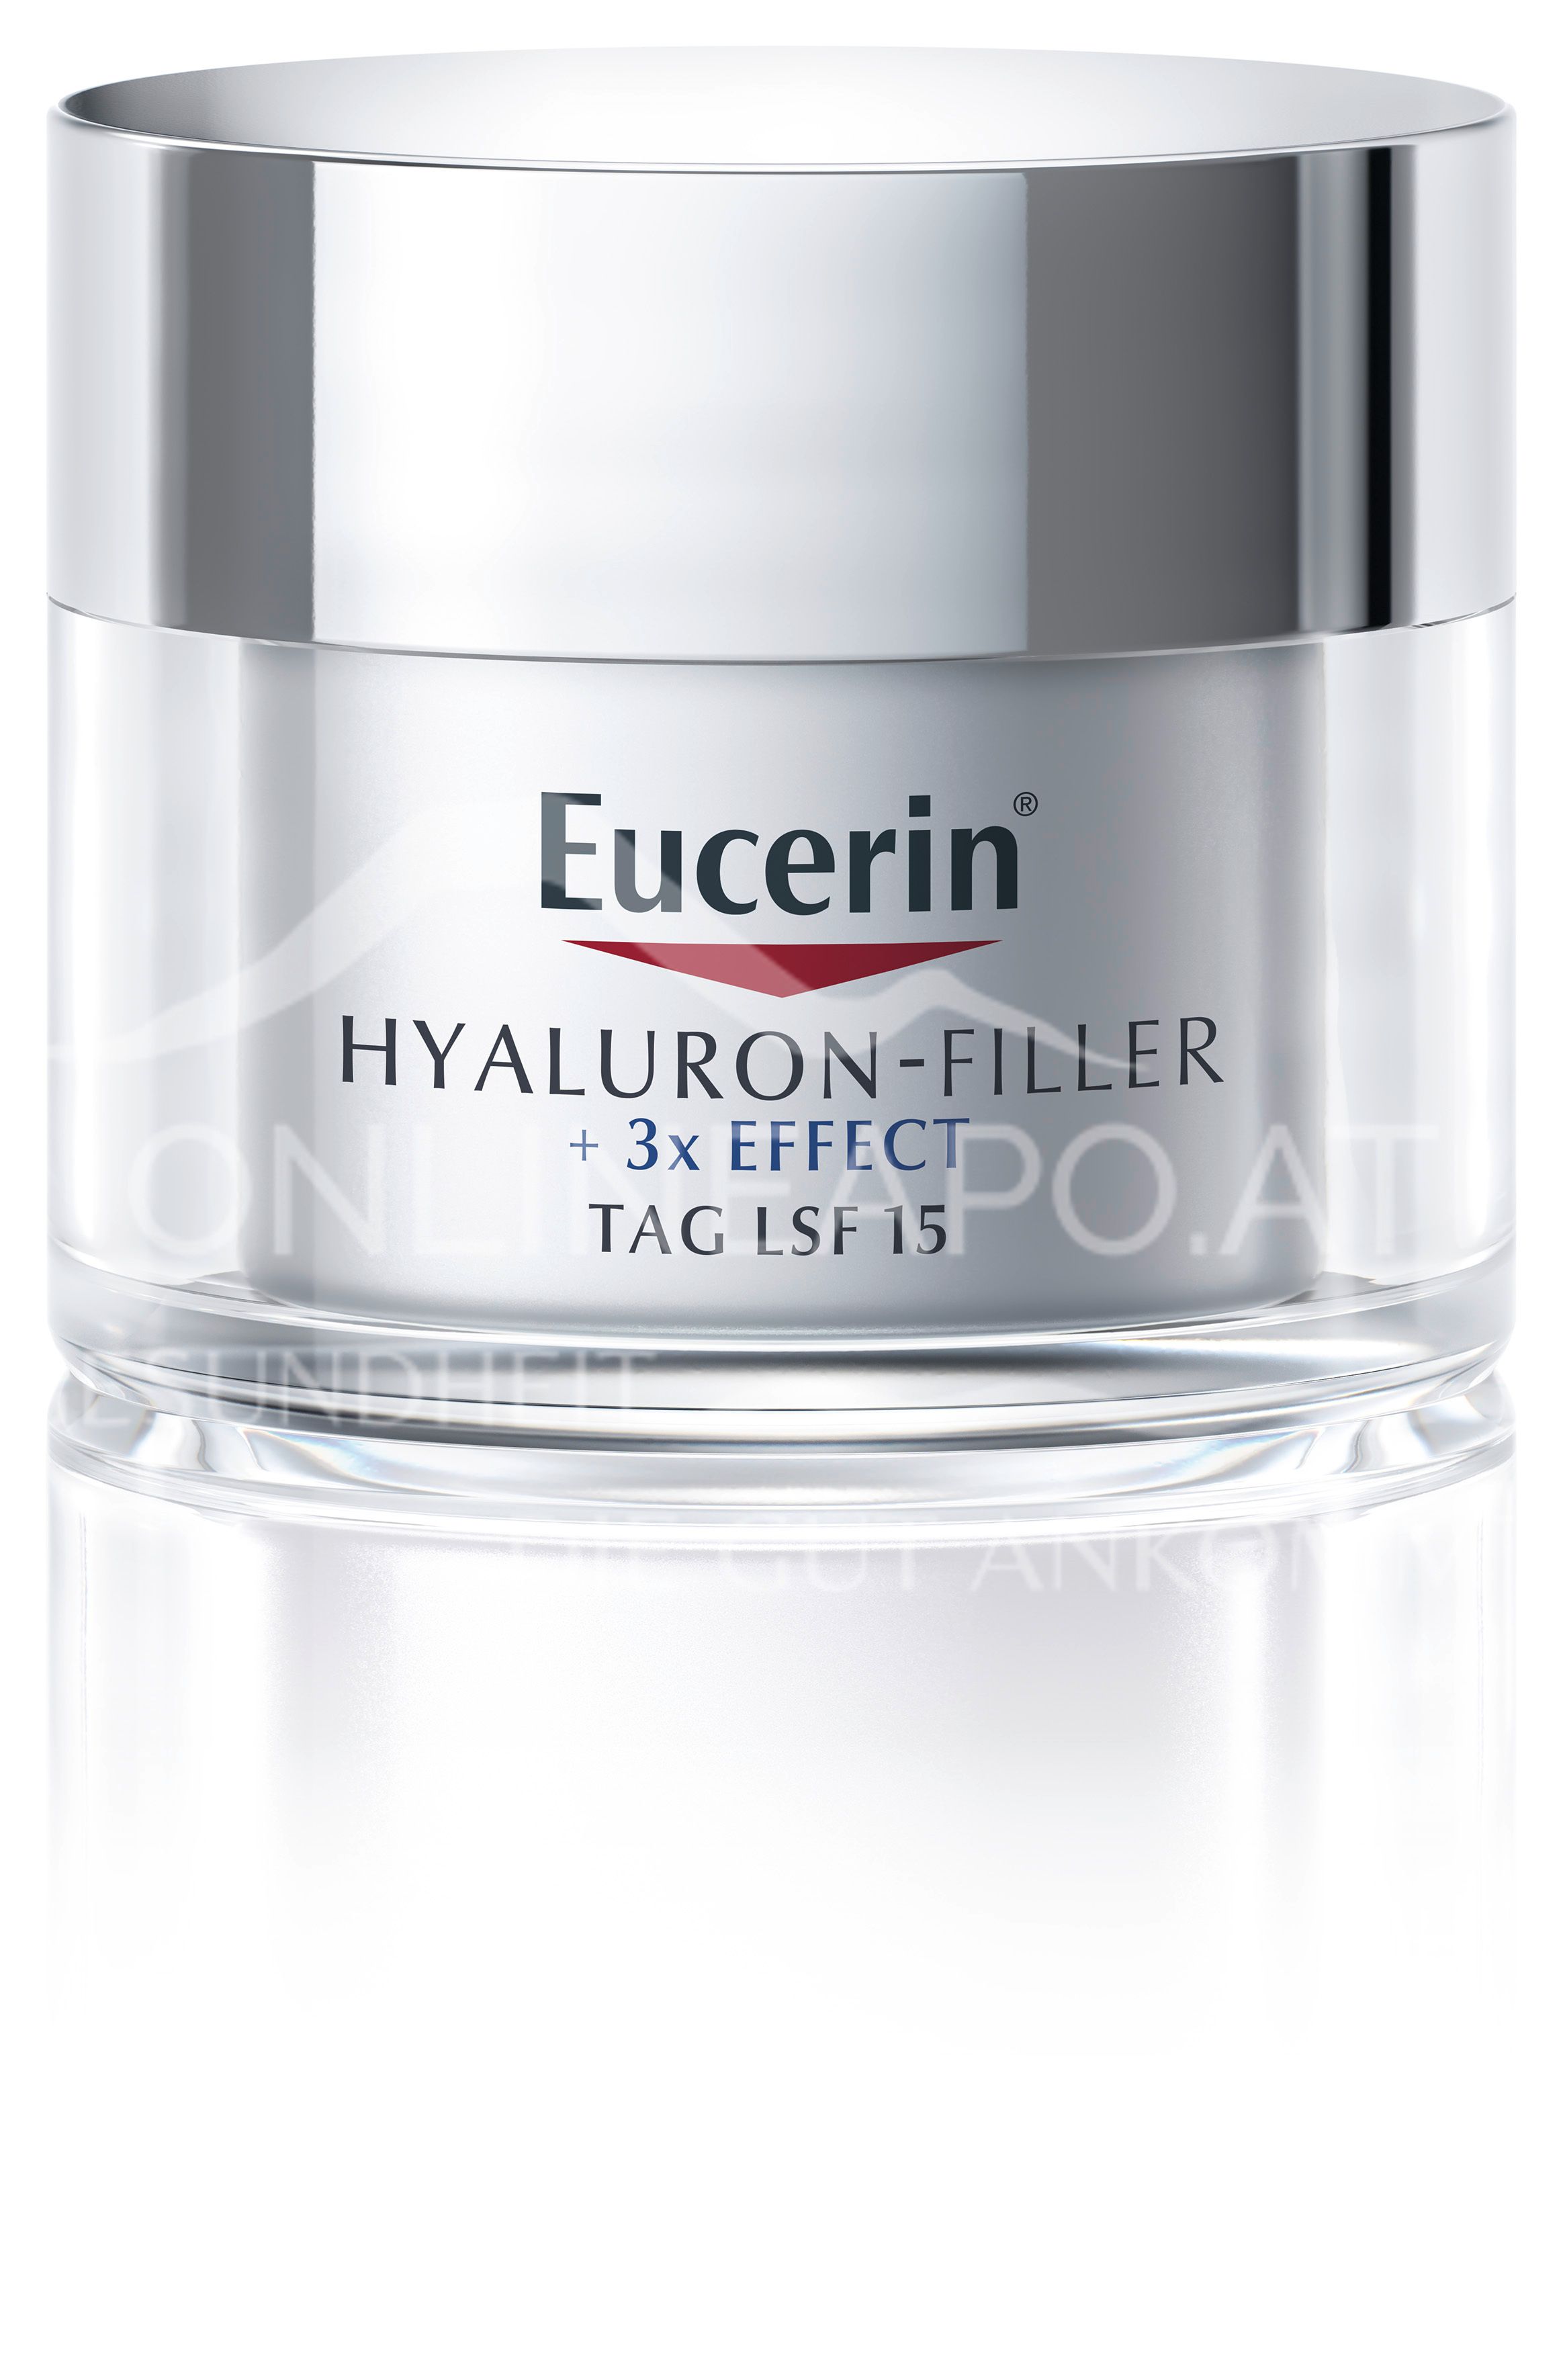 Eucerin® HYALURON-FILLER + 3x EFFECT LSF 15 Tagespflege für trockene Haut